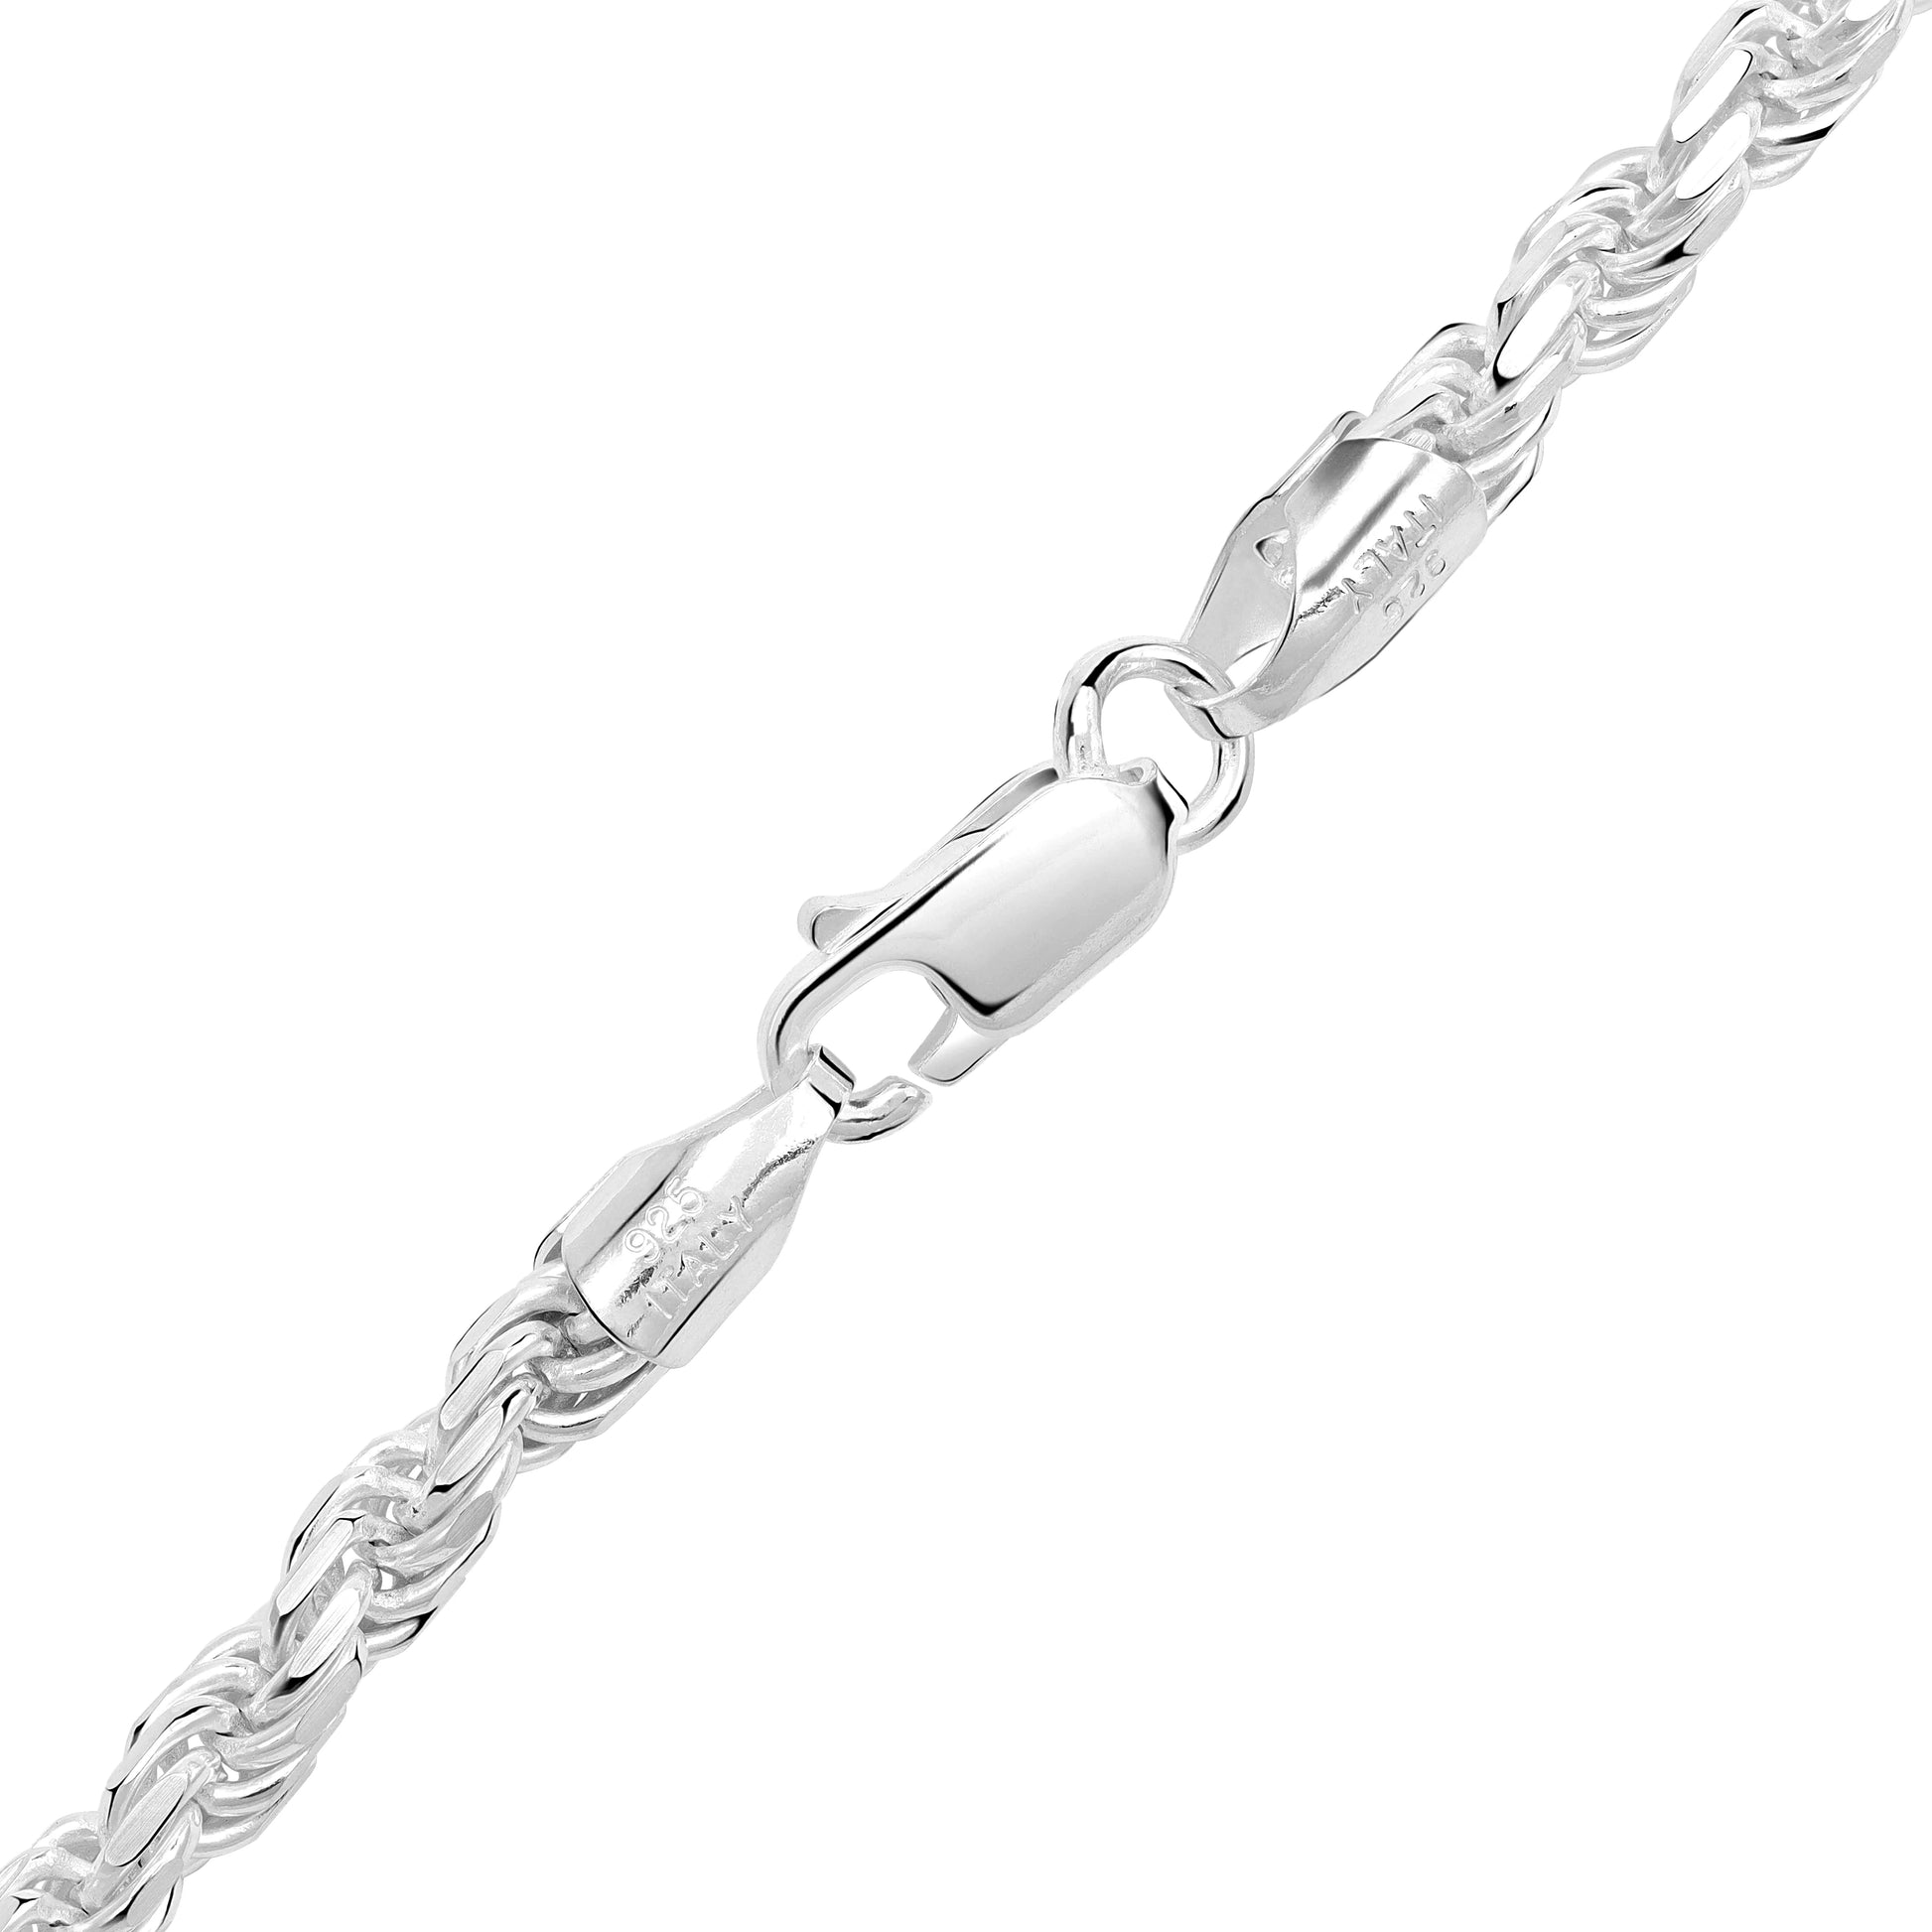 Kordelkette Rope Chain 3,5mm breit 55cm lang massiv 925 Sterling Silber (K508) - Taipan Schmuck